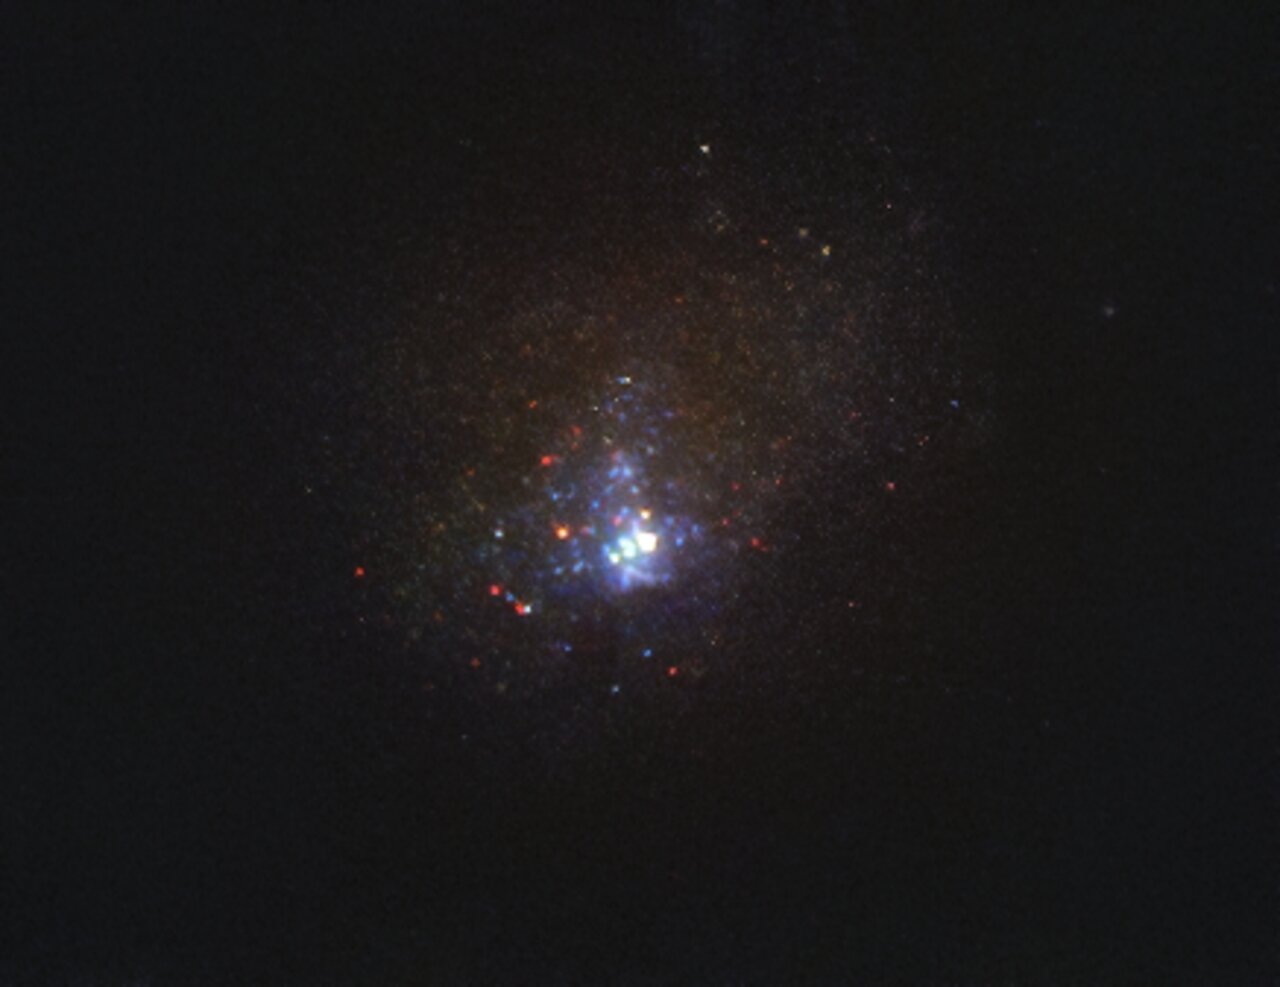 Фото галактики Кинман, сделанное телескопом «Хаббл» в 2011 году, когда там еще была исчезнувшая звезда, фото: ESO